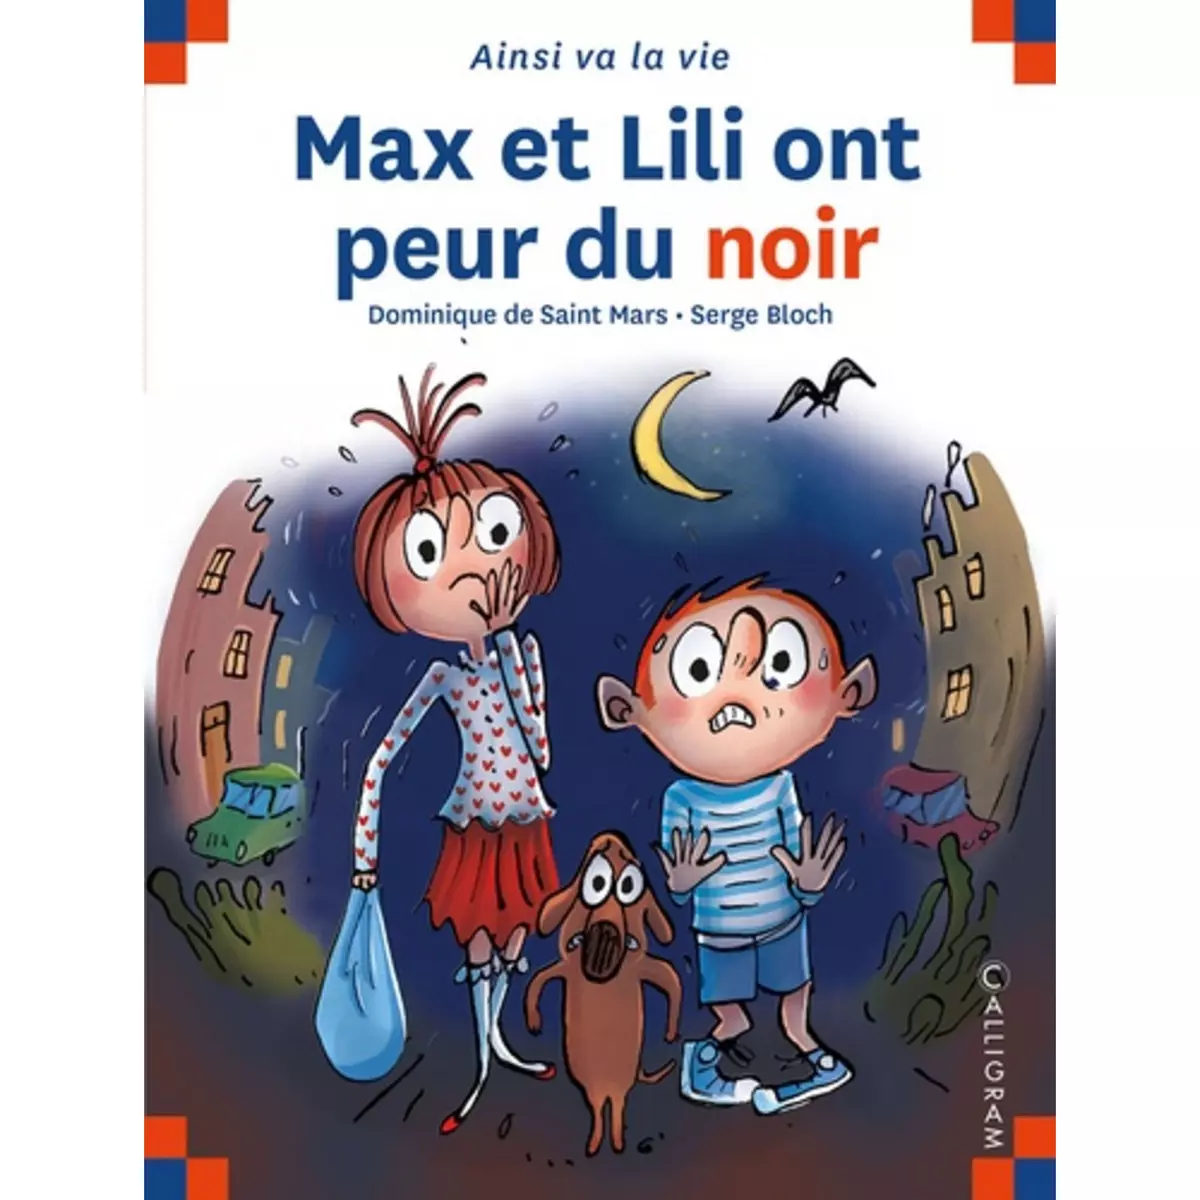  MAX ET LILI ONT PEUR DU NOIR, Saint Mars Dominique de